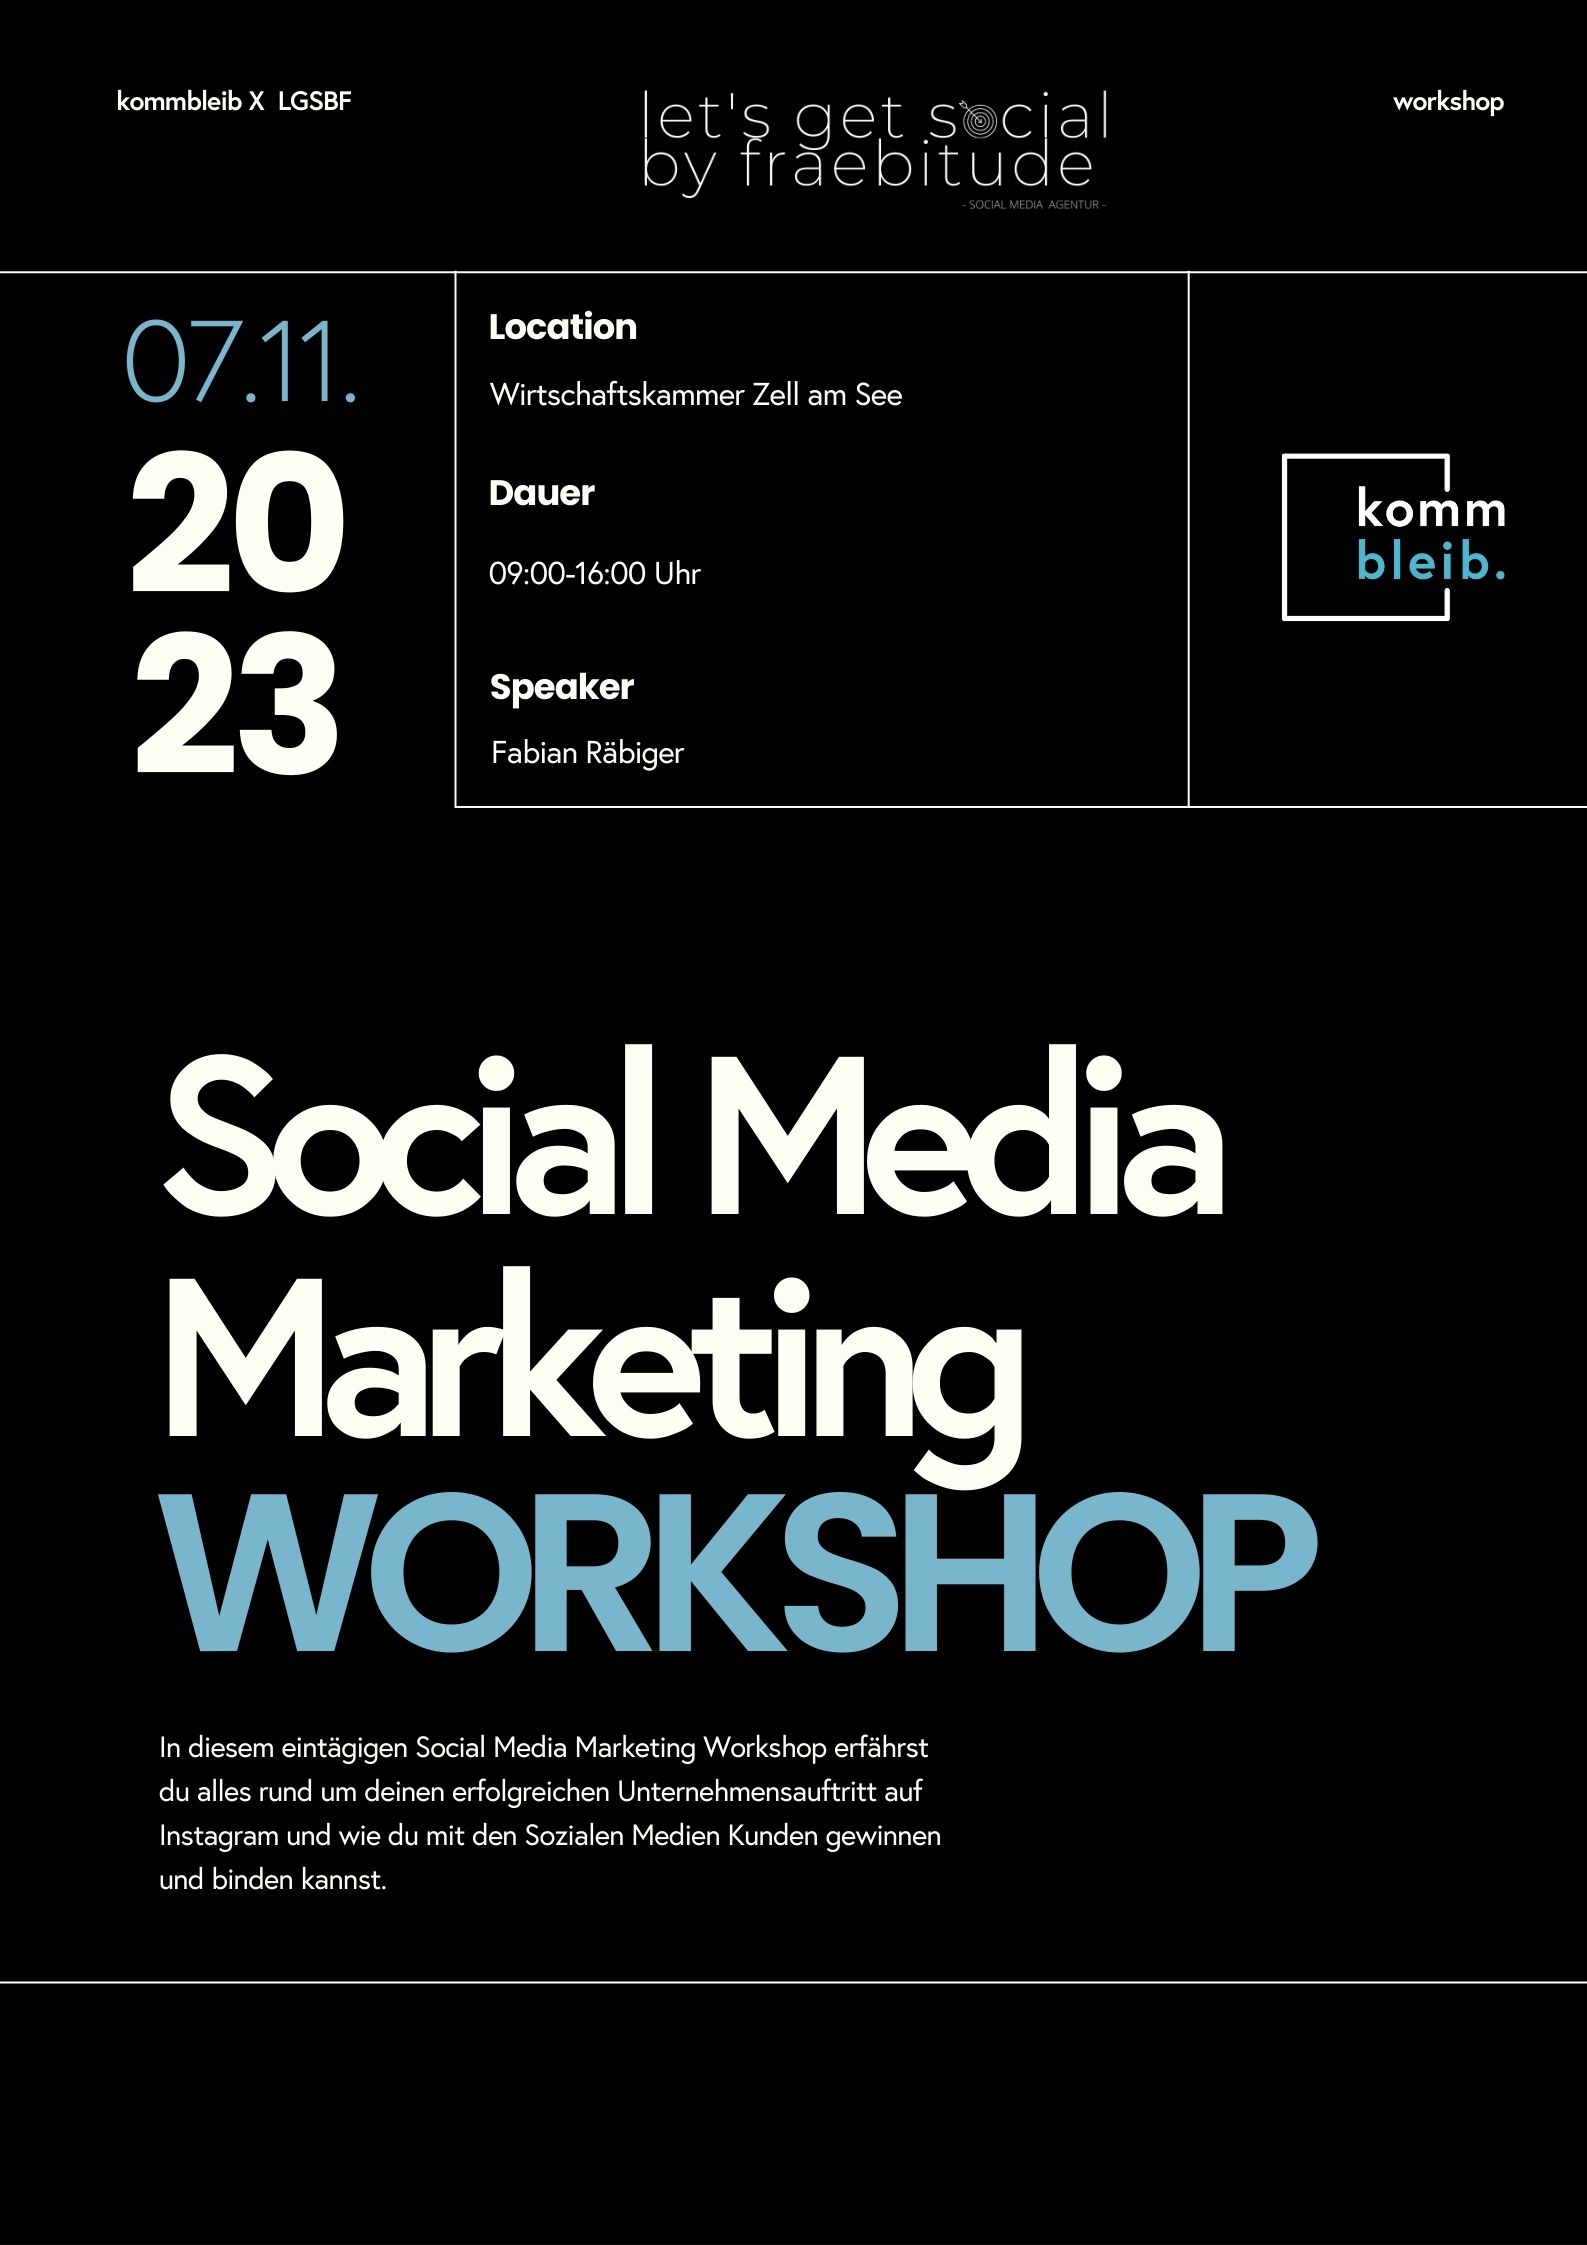 Social Media Workshop